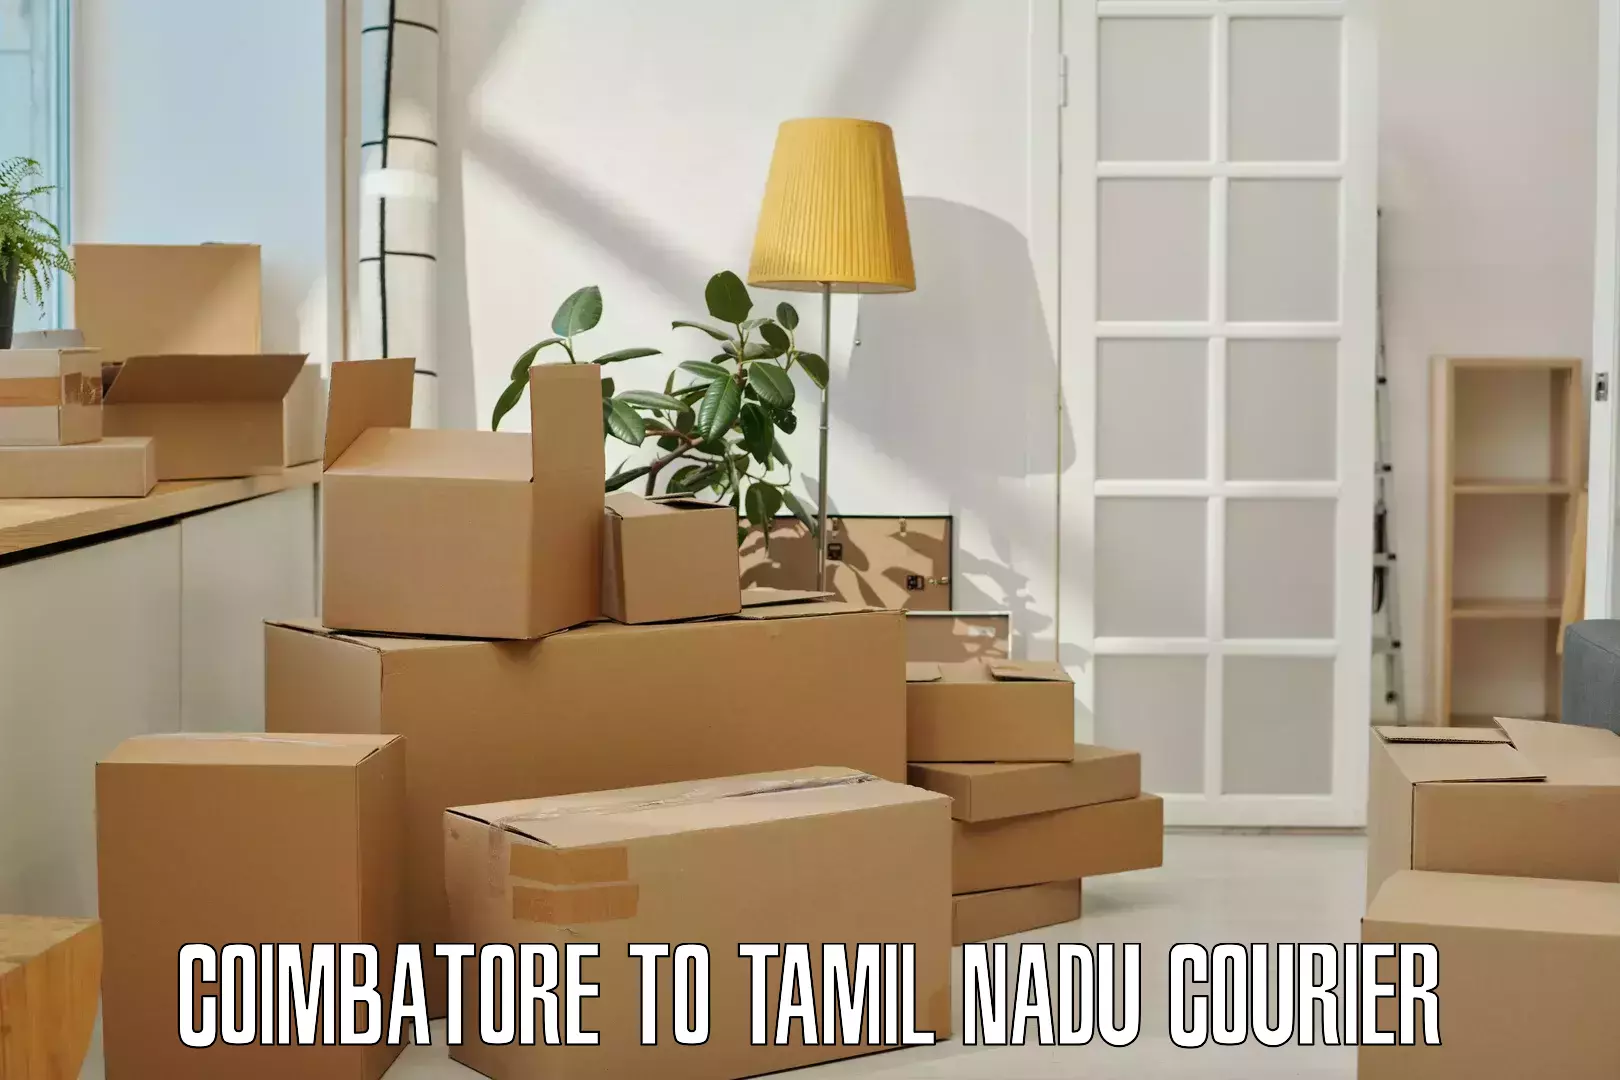 Courier service comparison Coimbatore to Chennai